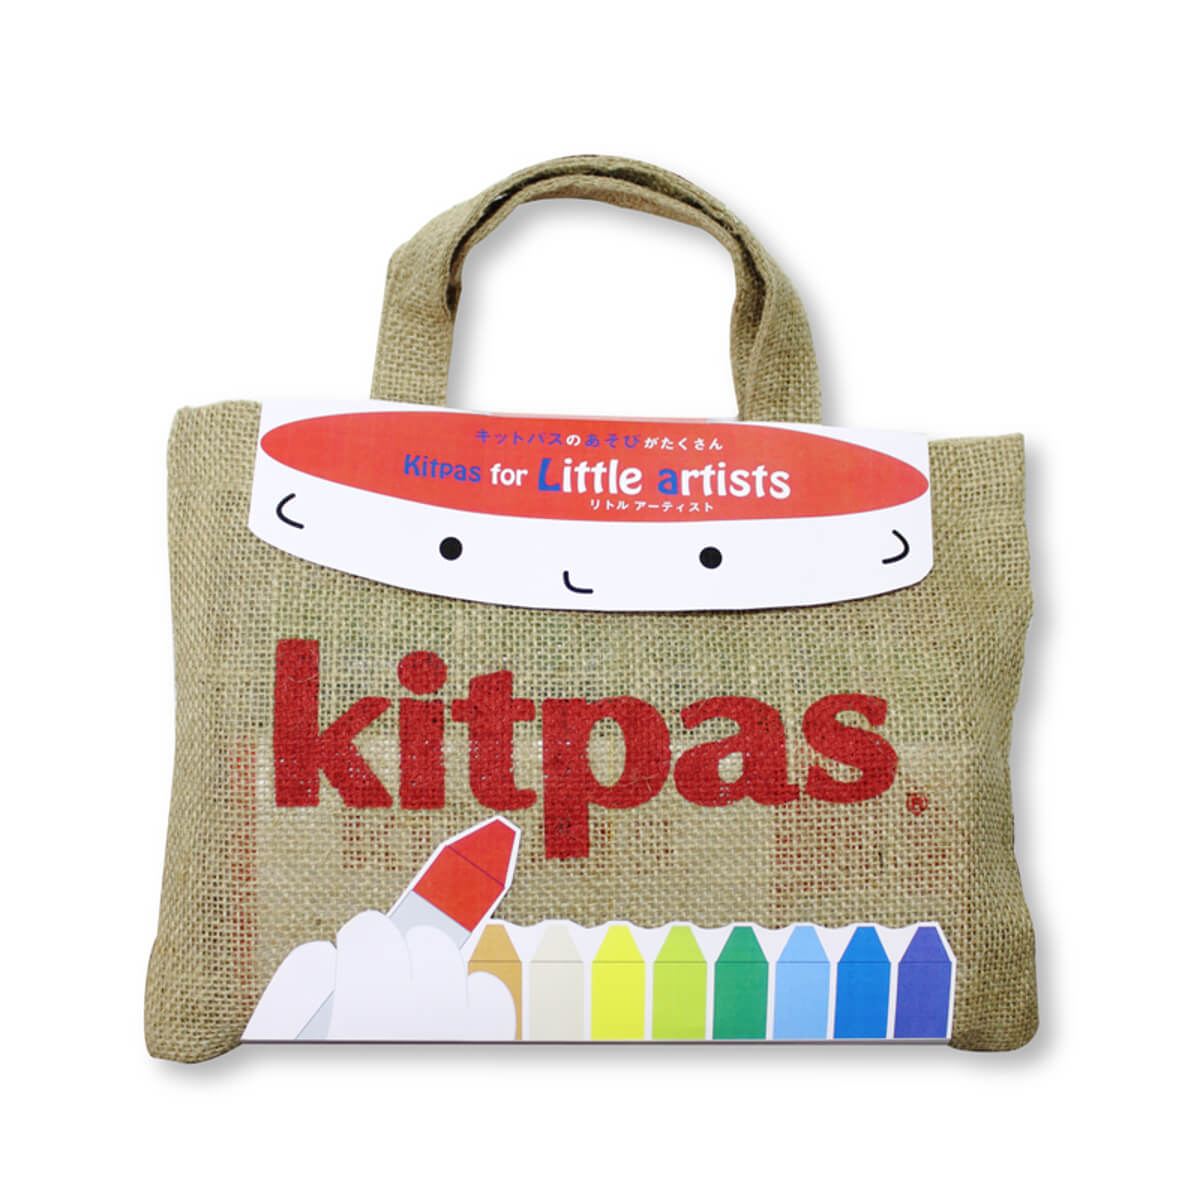 KT-KLTA Kitpas for Little Artists